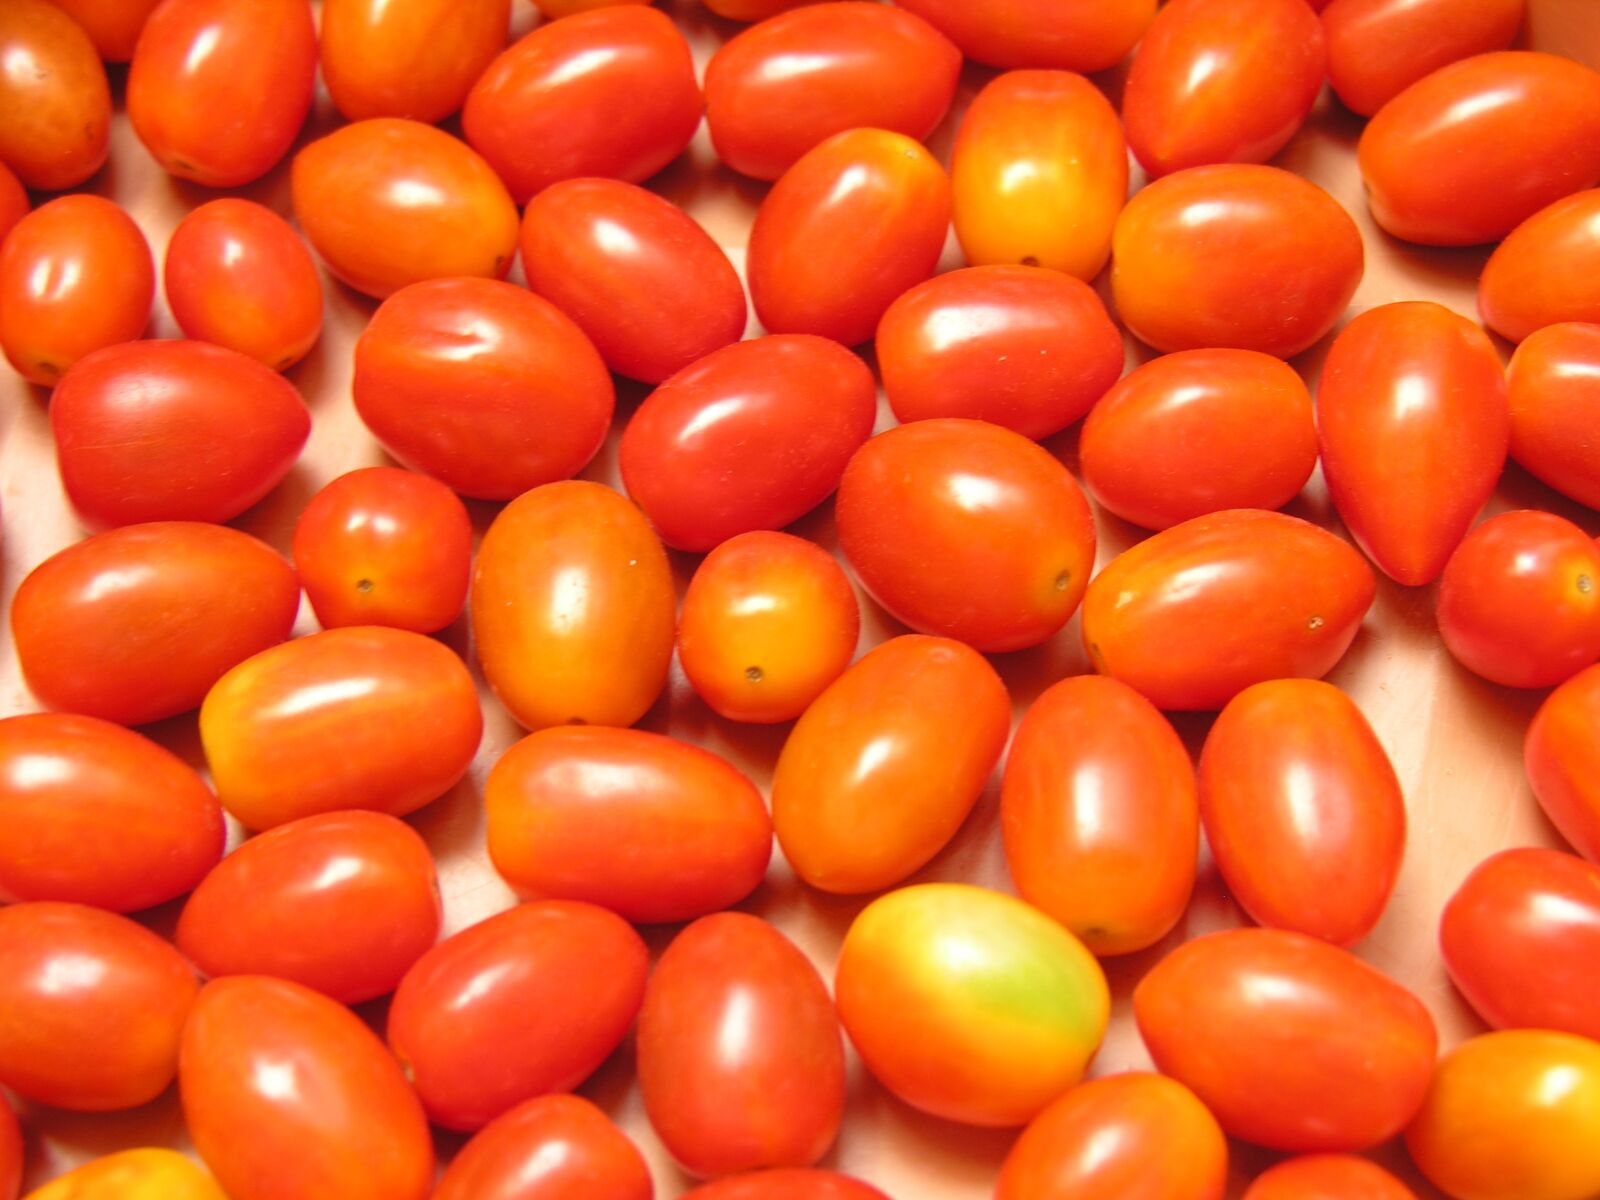 Nikon E8800 sample photo. Tomato, food, cherry tomato photography